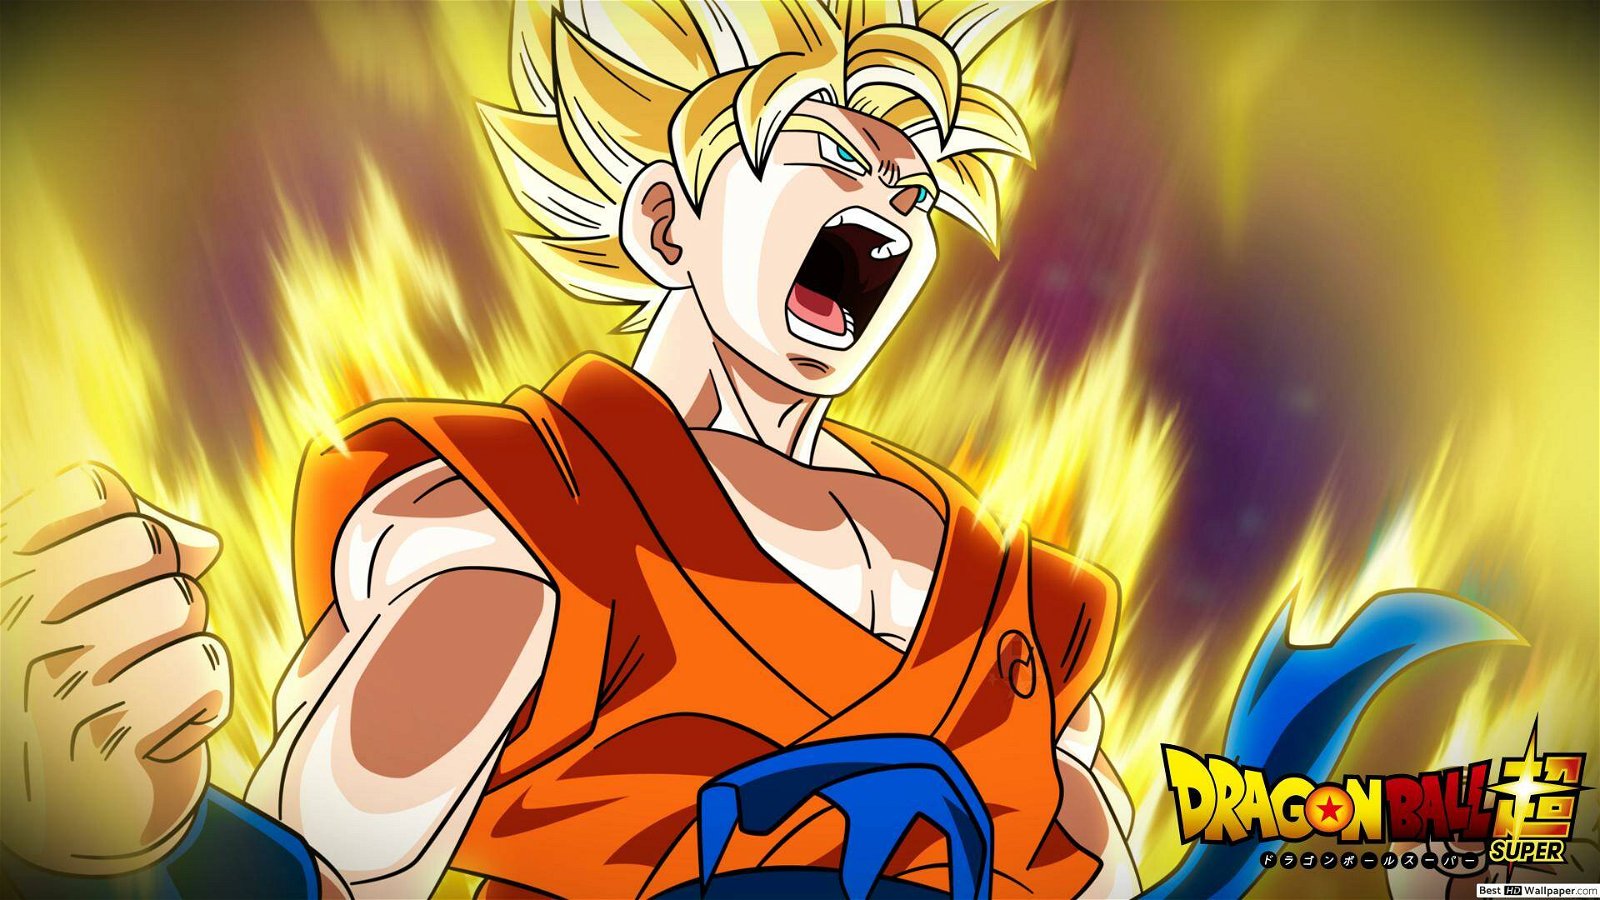 Immagine di Dragon Ball Super 72: un potere simile a quello di un dio